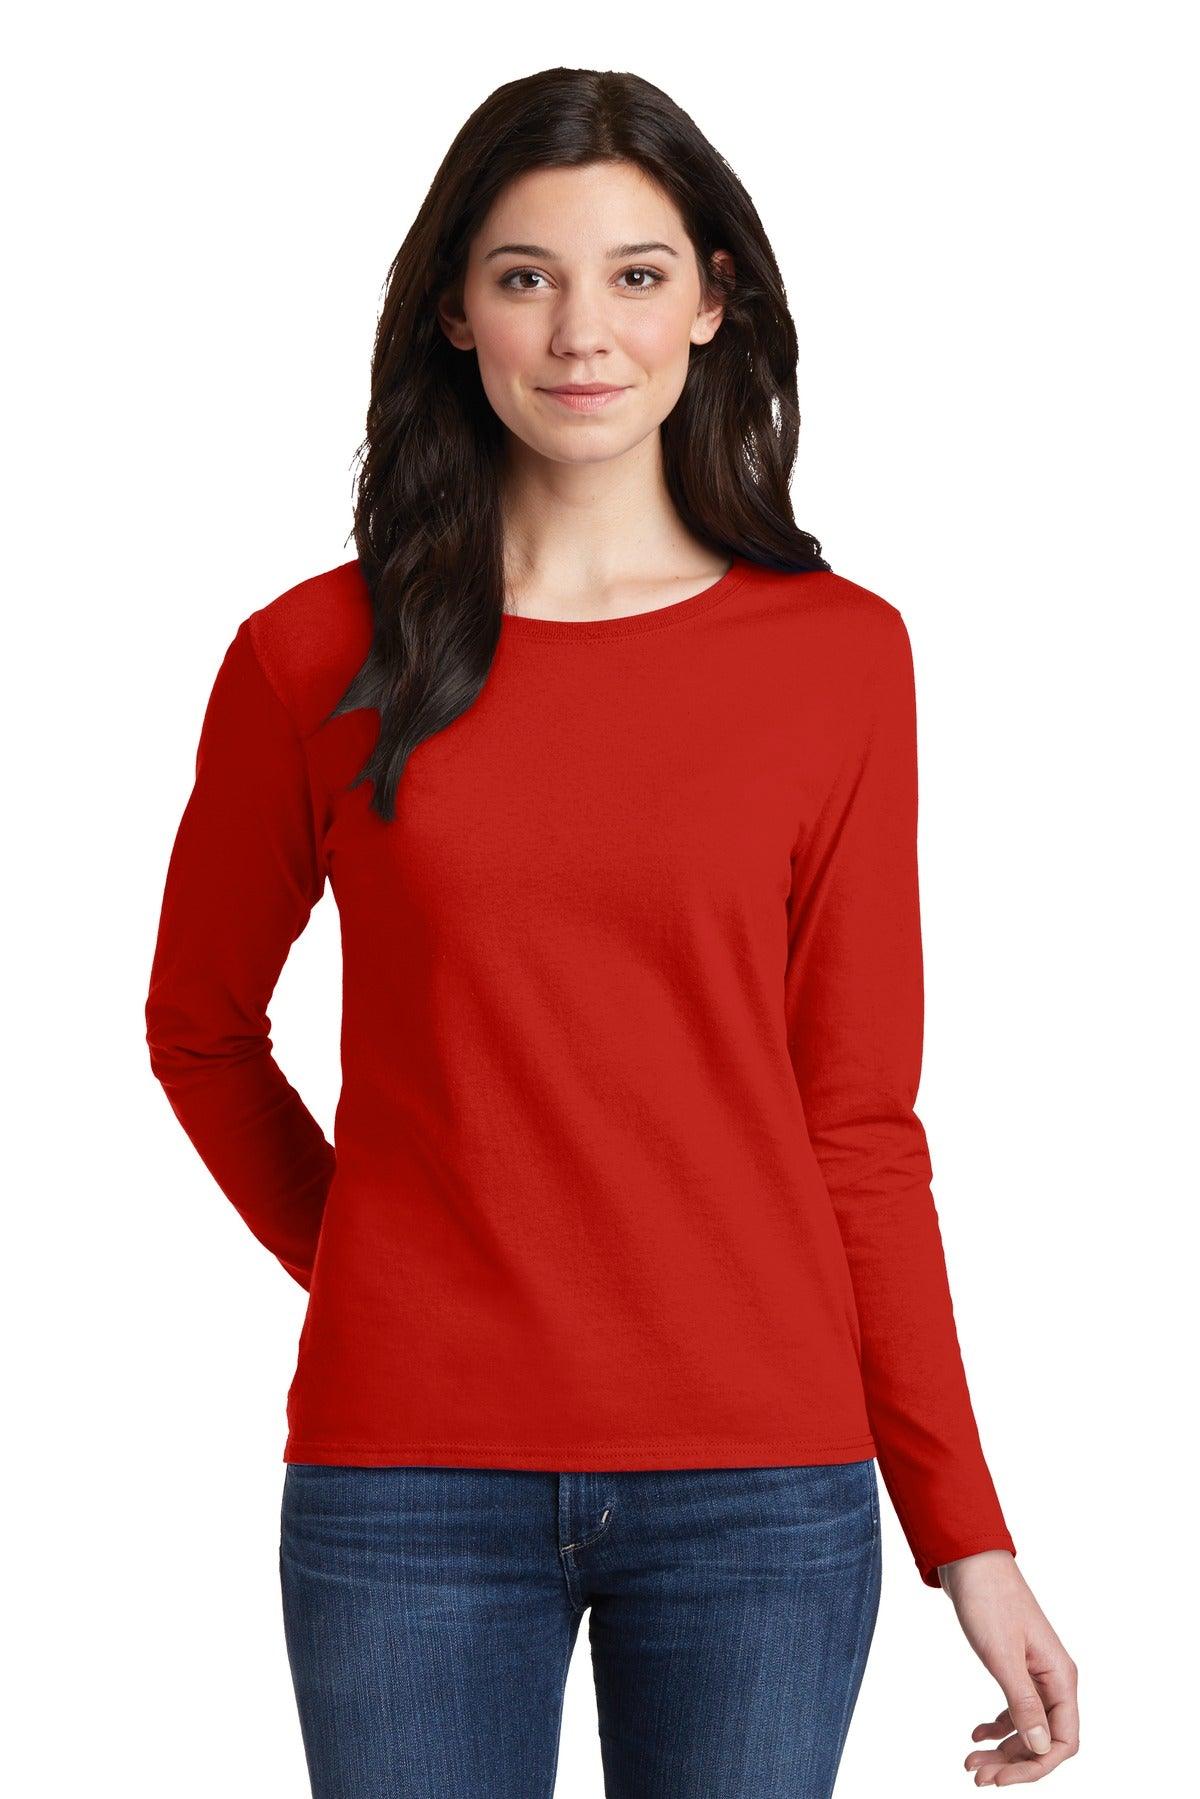 Gildan Ladies Heavy Cotton 100% Cotton Long Sleeve T-Shirt. 5400L - Dresses Max